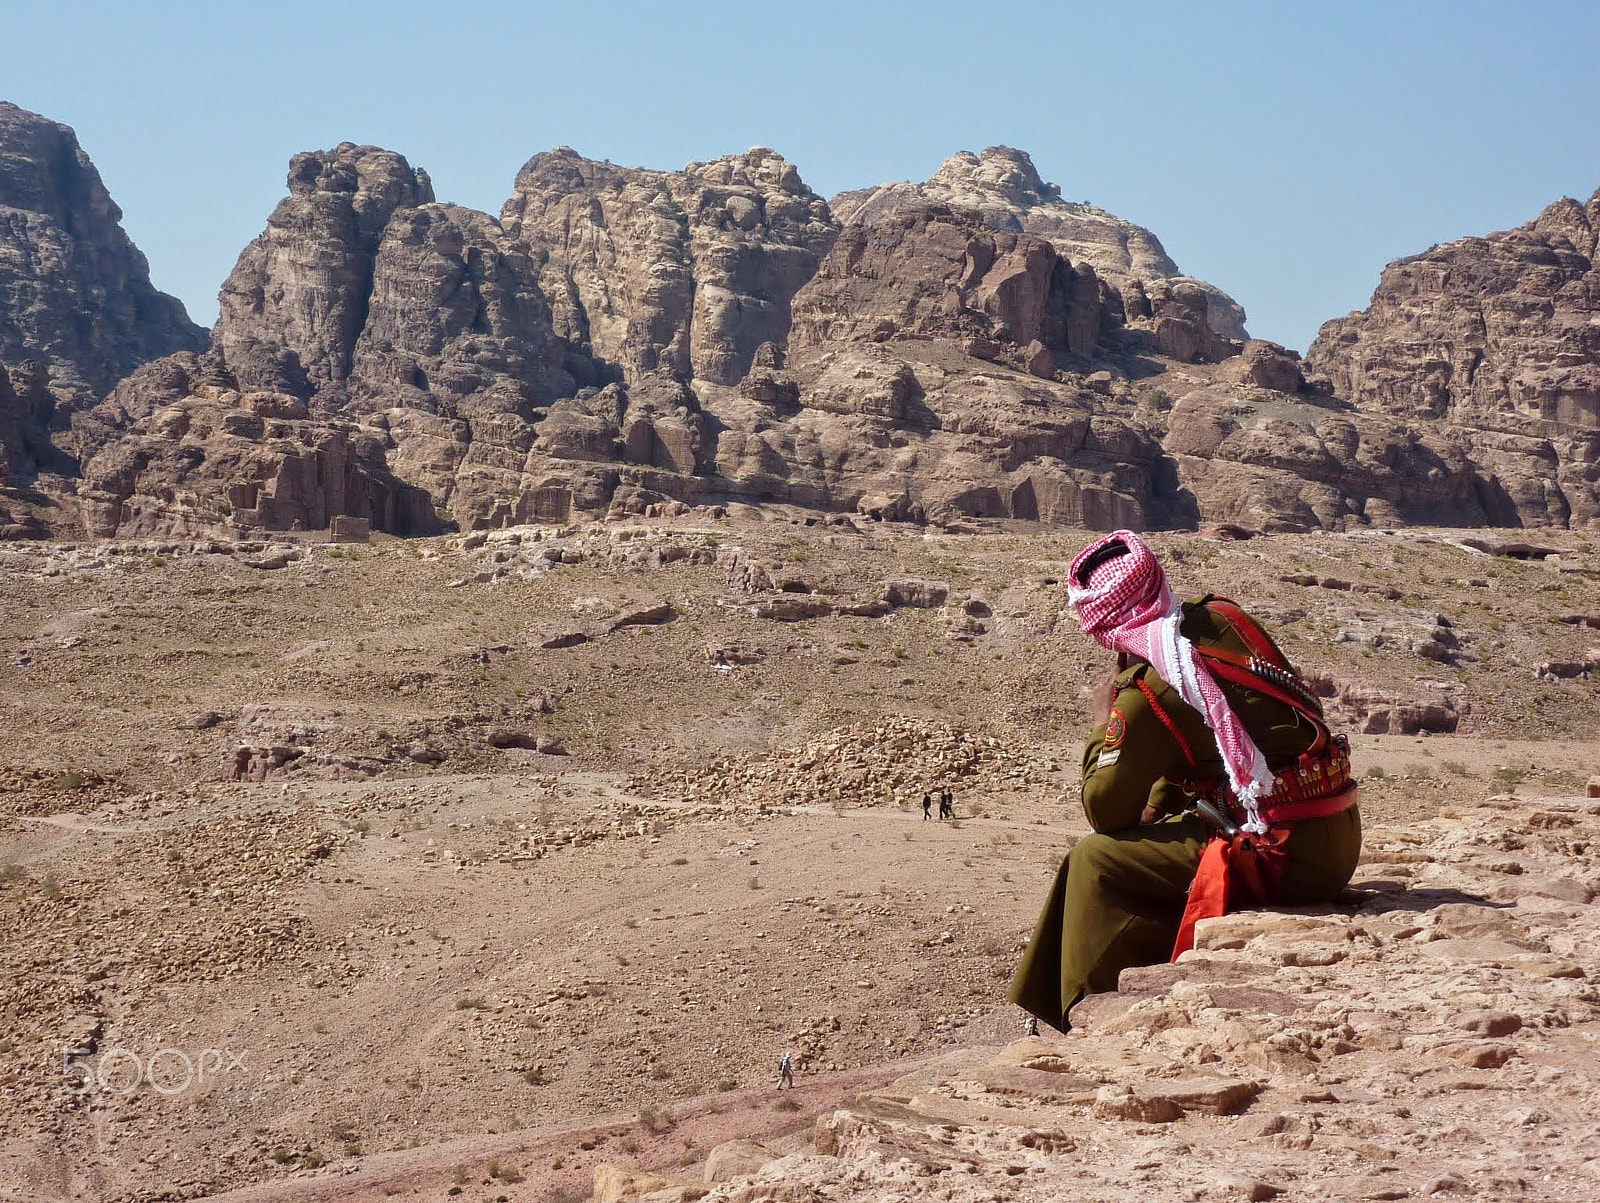 Panasonic Lumix DMC-ZS1 (Lumix DMC-TZ6) sample photo. Bedouin in petra, jordan photography